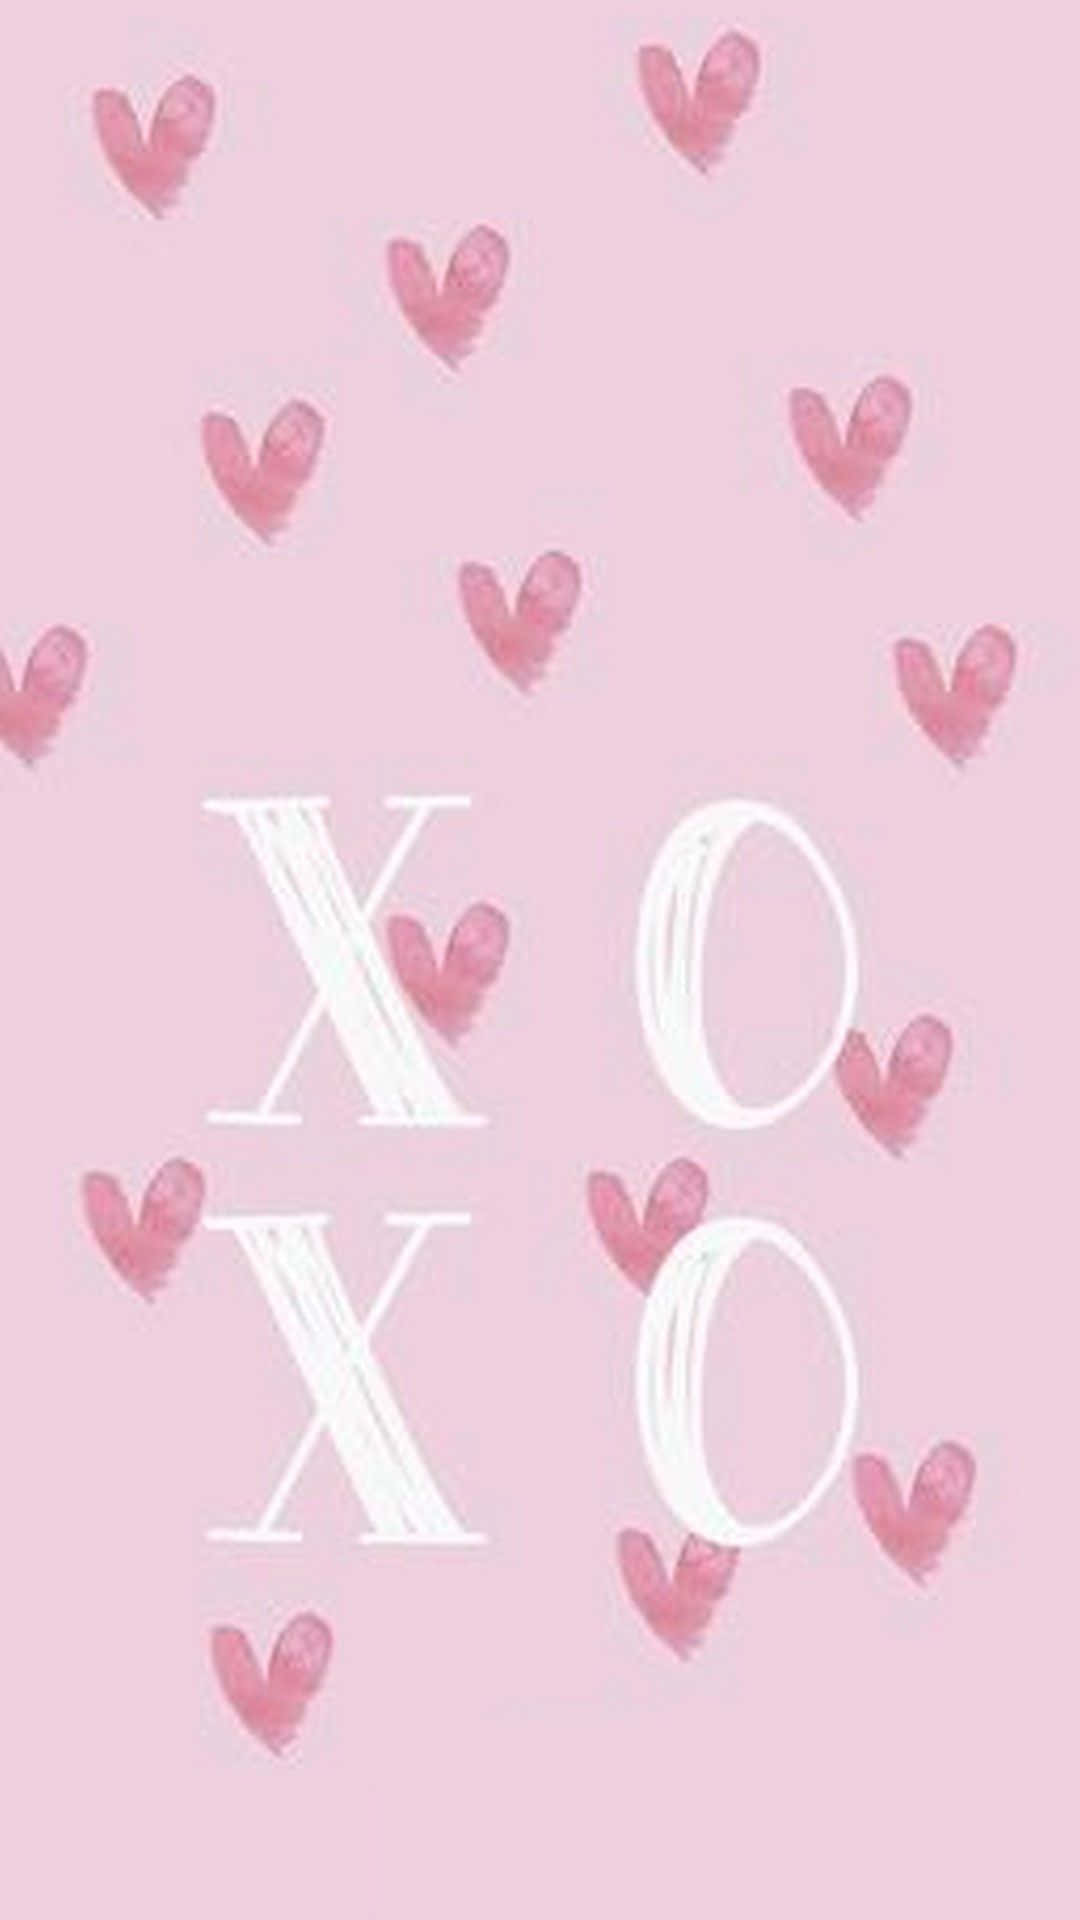 Einpinker Hintergrund Mit Herzen Und Dem Wort Xoxo Wallpaper